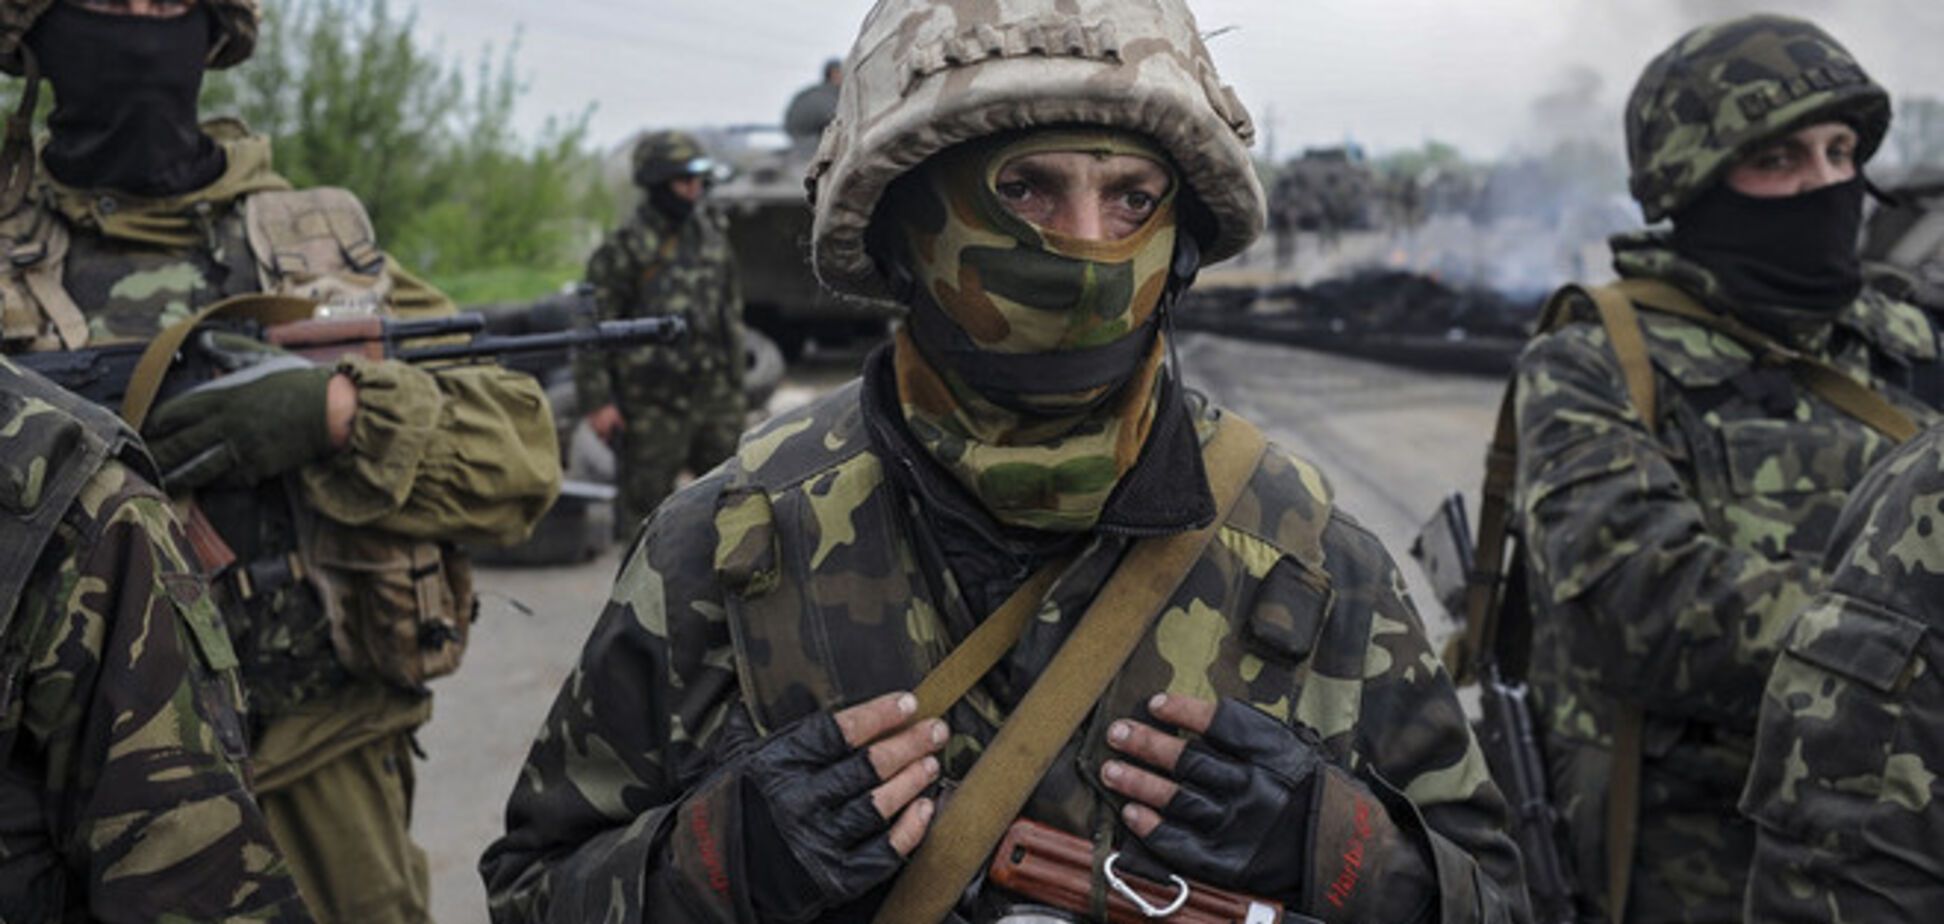 СНБО: силы АТО не будут применять боевую технику в жилых районах Донбасса